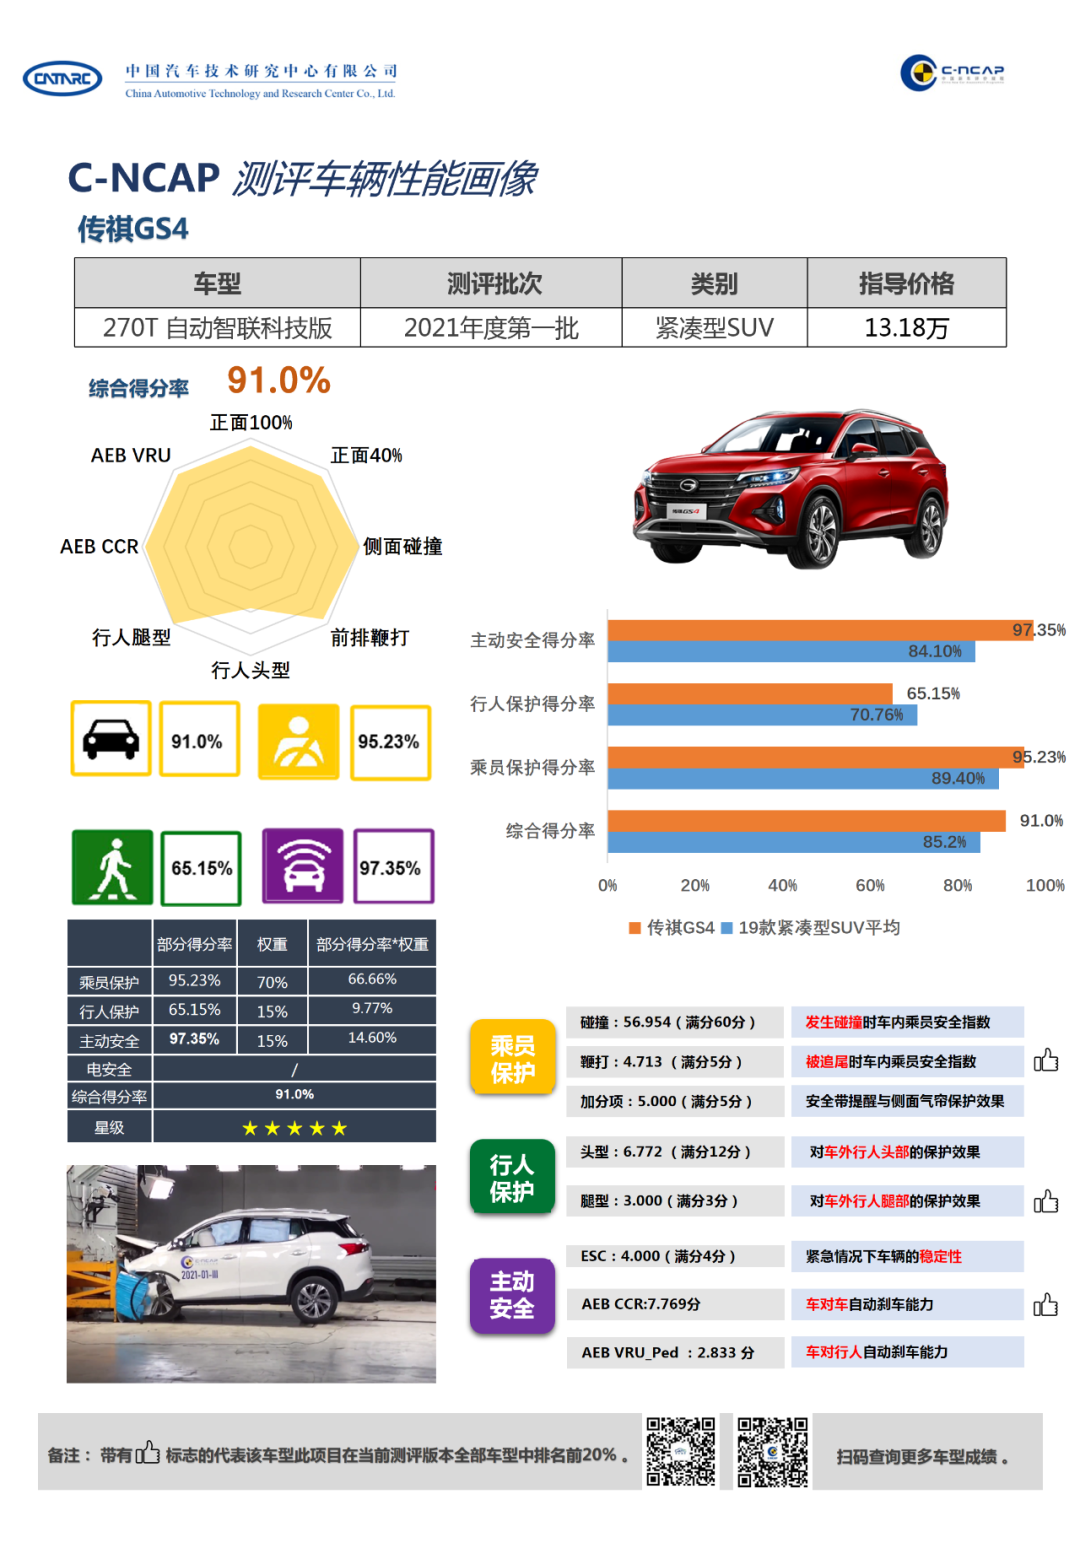 C-NCAP 2021年度第1号车型评价结果-广汽传祺GS4